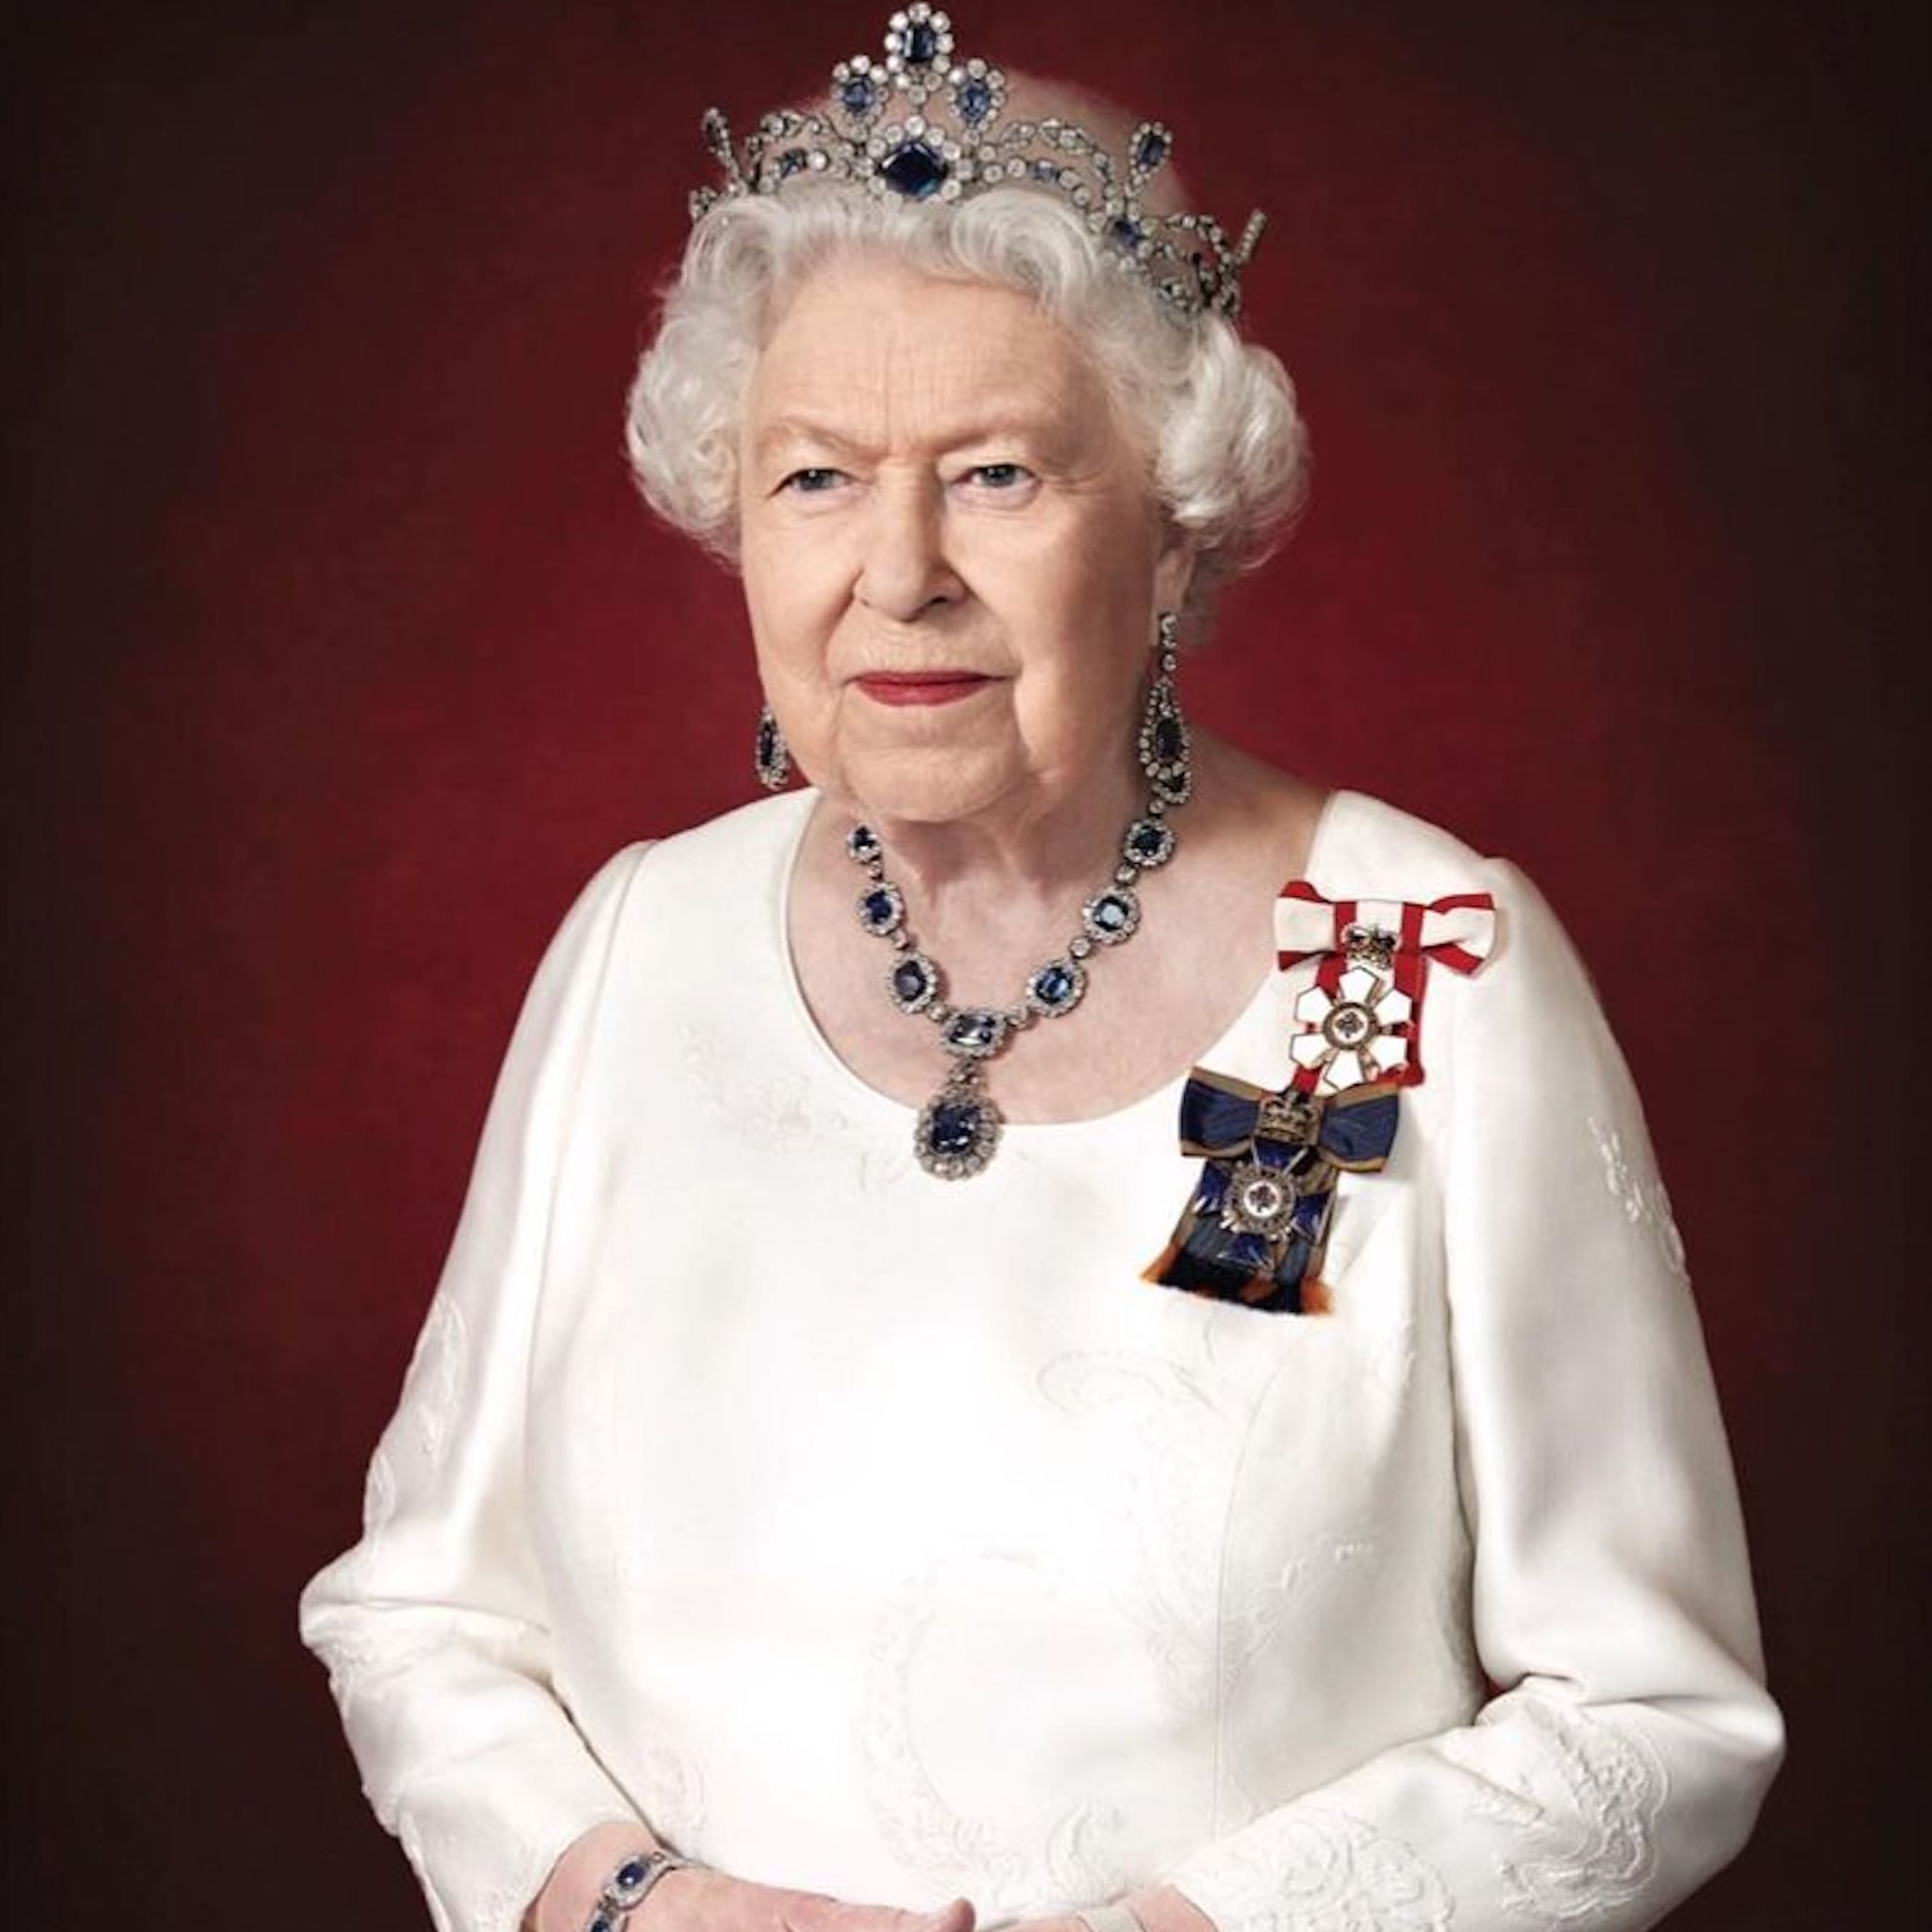 British newspaper reveals the value of Queen Elizabeth's jewellery